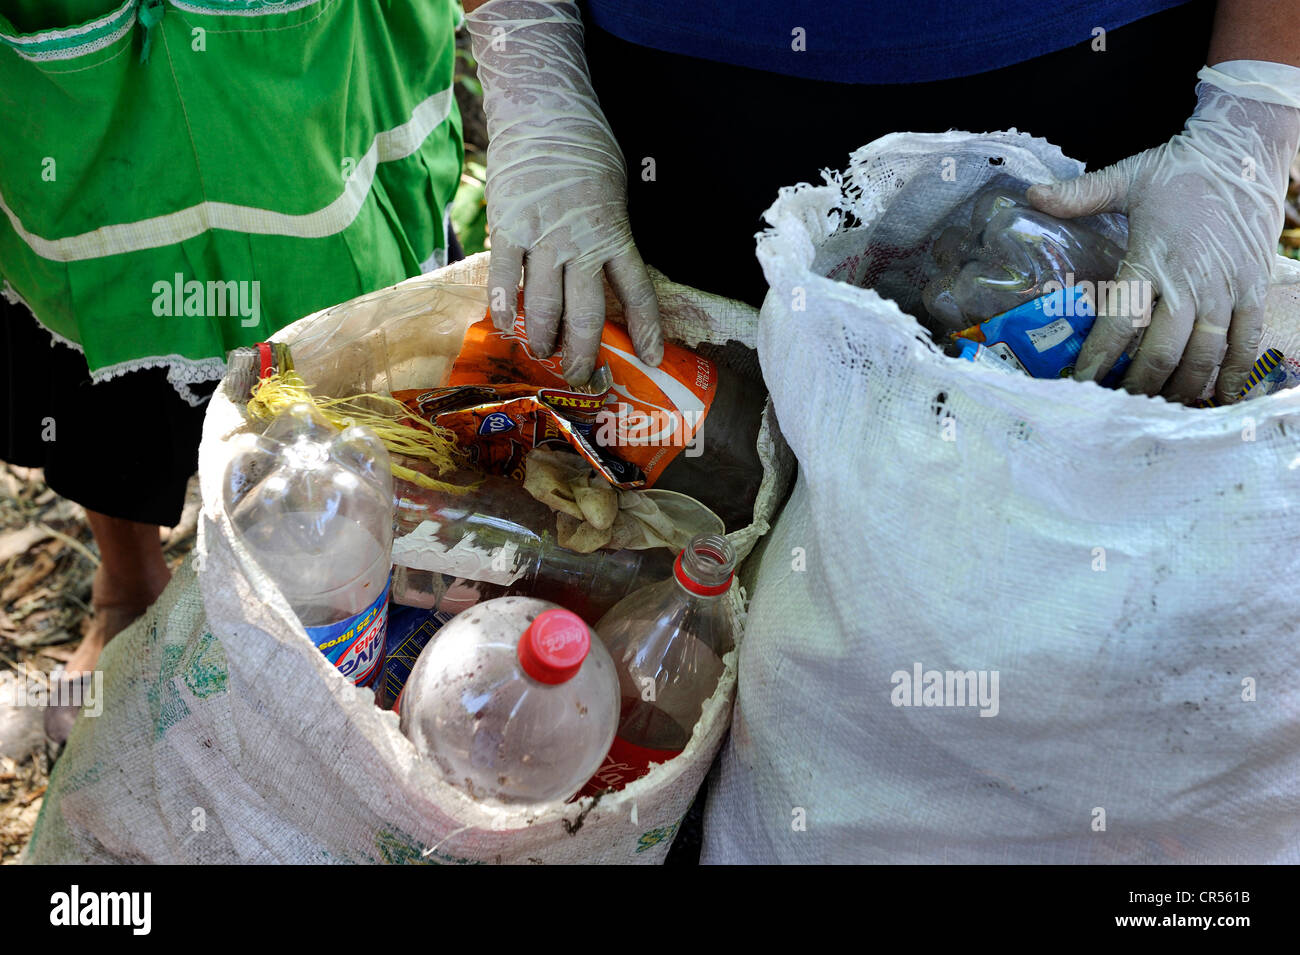 Des sacs poubelle pleine de détritus recueillies par des femmes dans une opération de nettoyage organisée par la Croix-Rouge suisse, les ordures s'étalait Banque D'Images